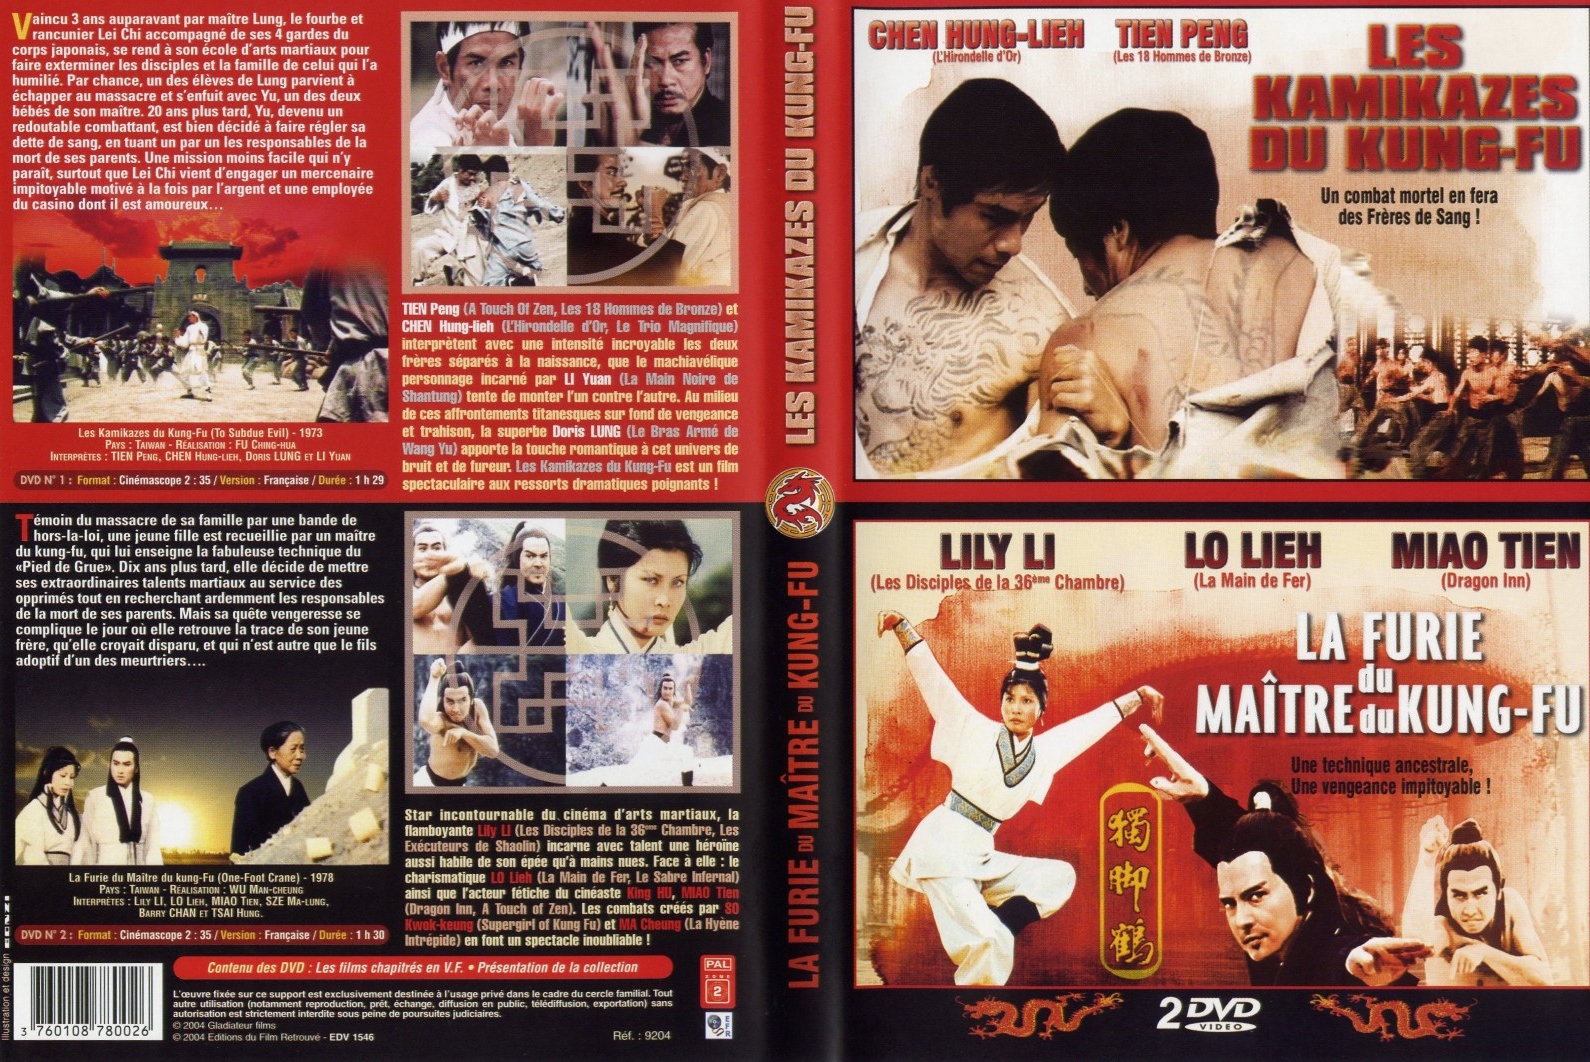 Jaquette DVD Les kamikazes du kung fu + La furie du maitre du kung fu